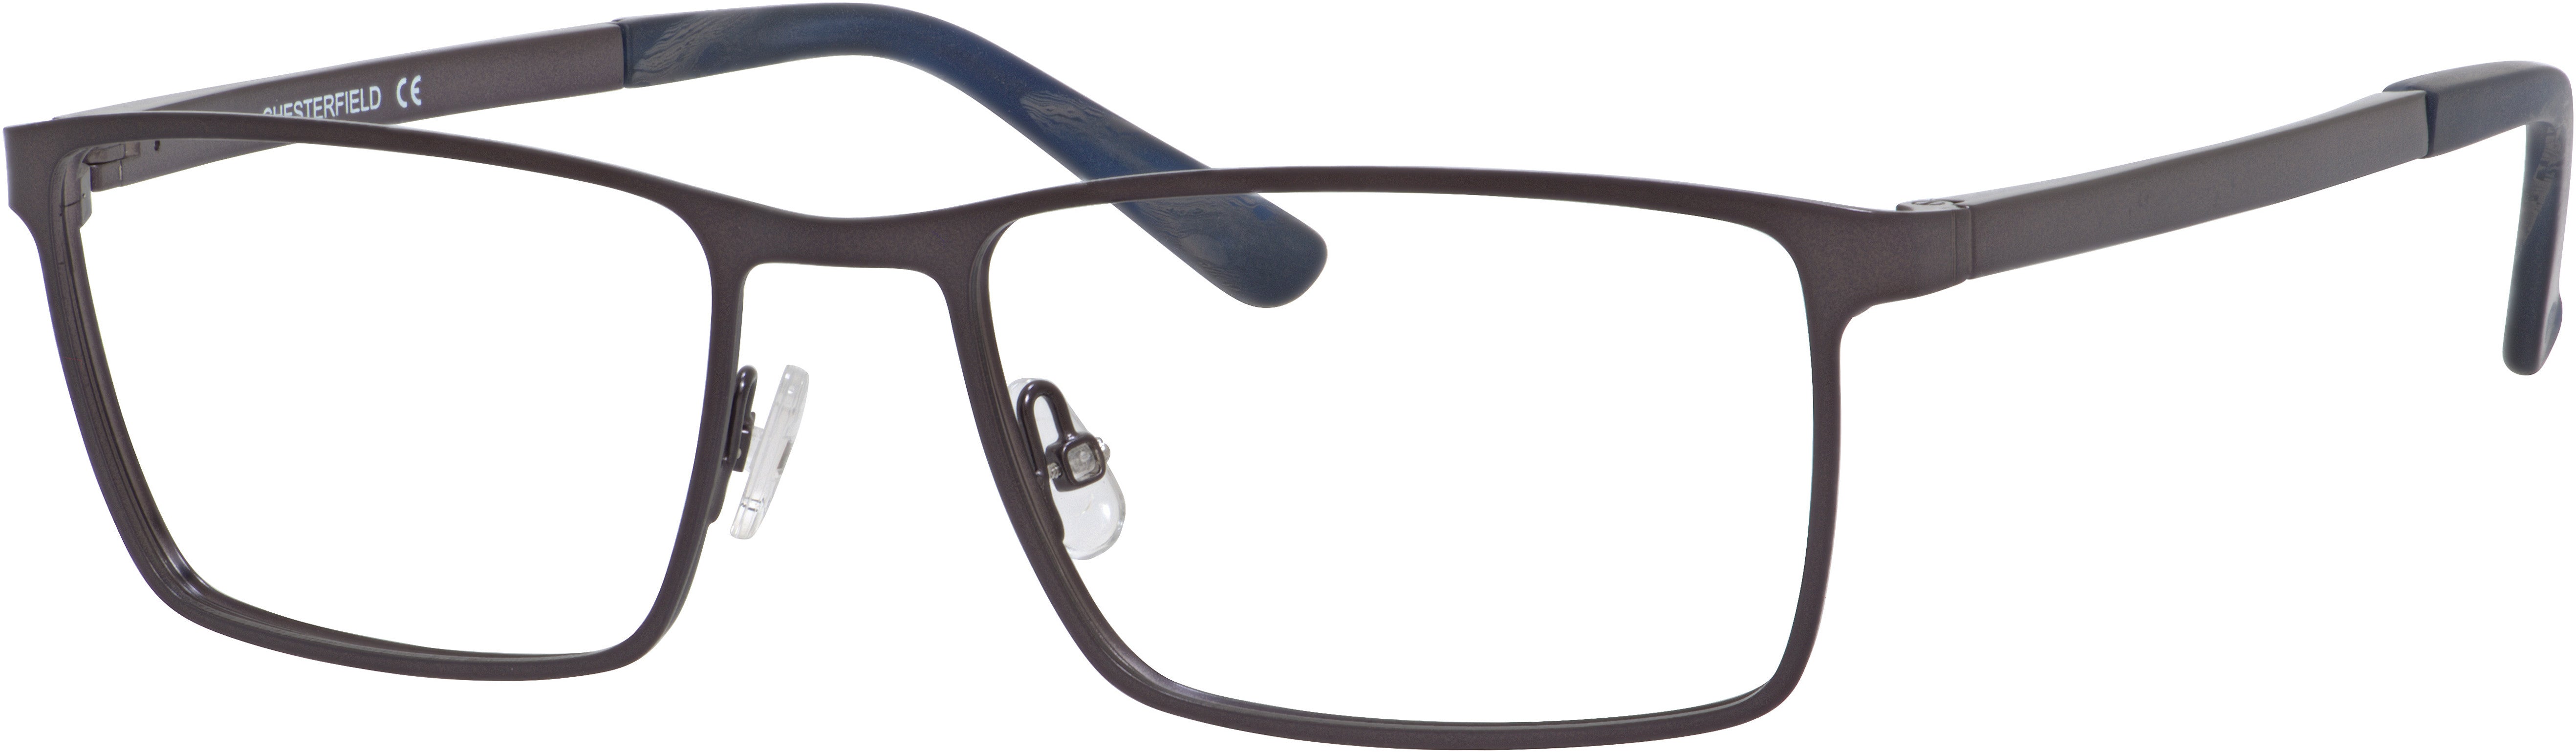  Chesterfield 55XL Rectangular Eyeglasses 0FRE-0FRE  Matte Gray (00 Demo Lens)